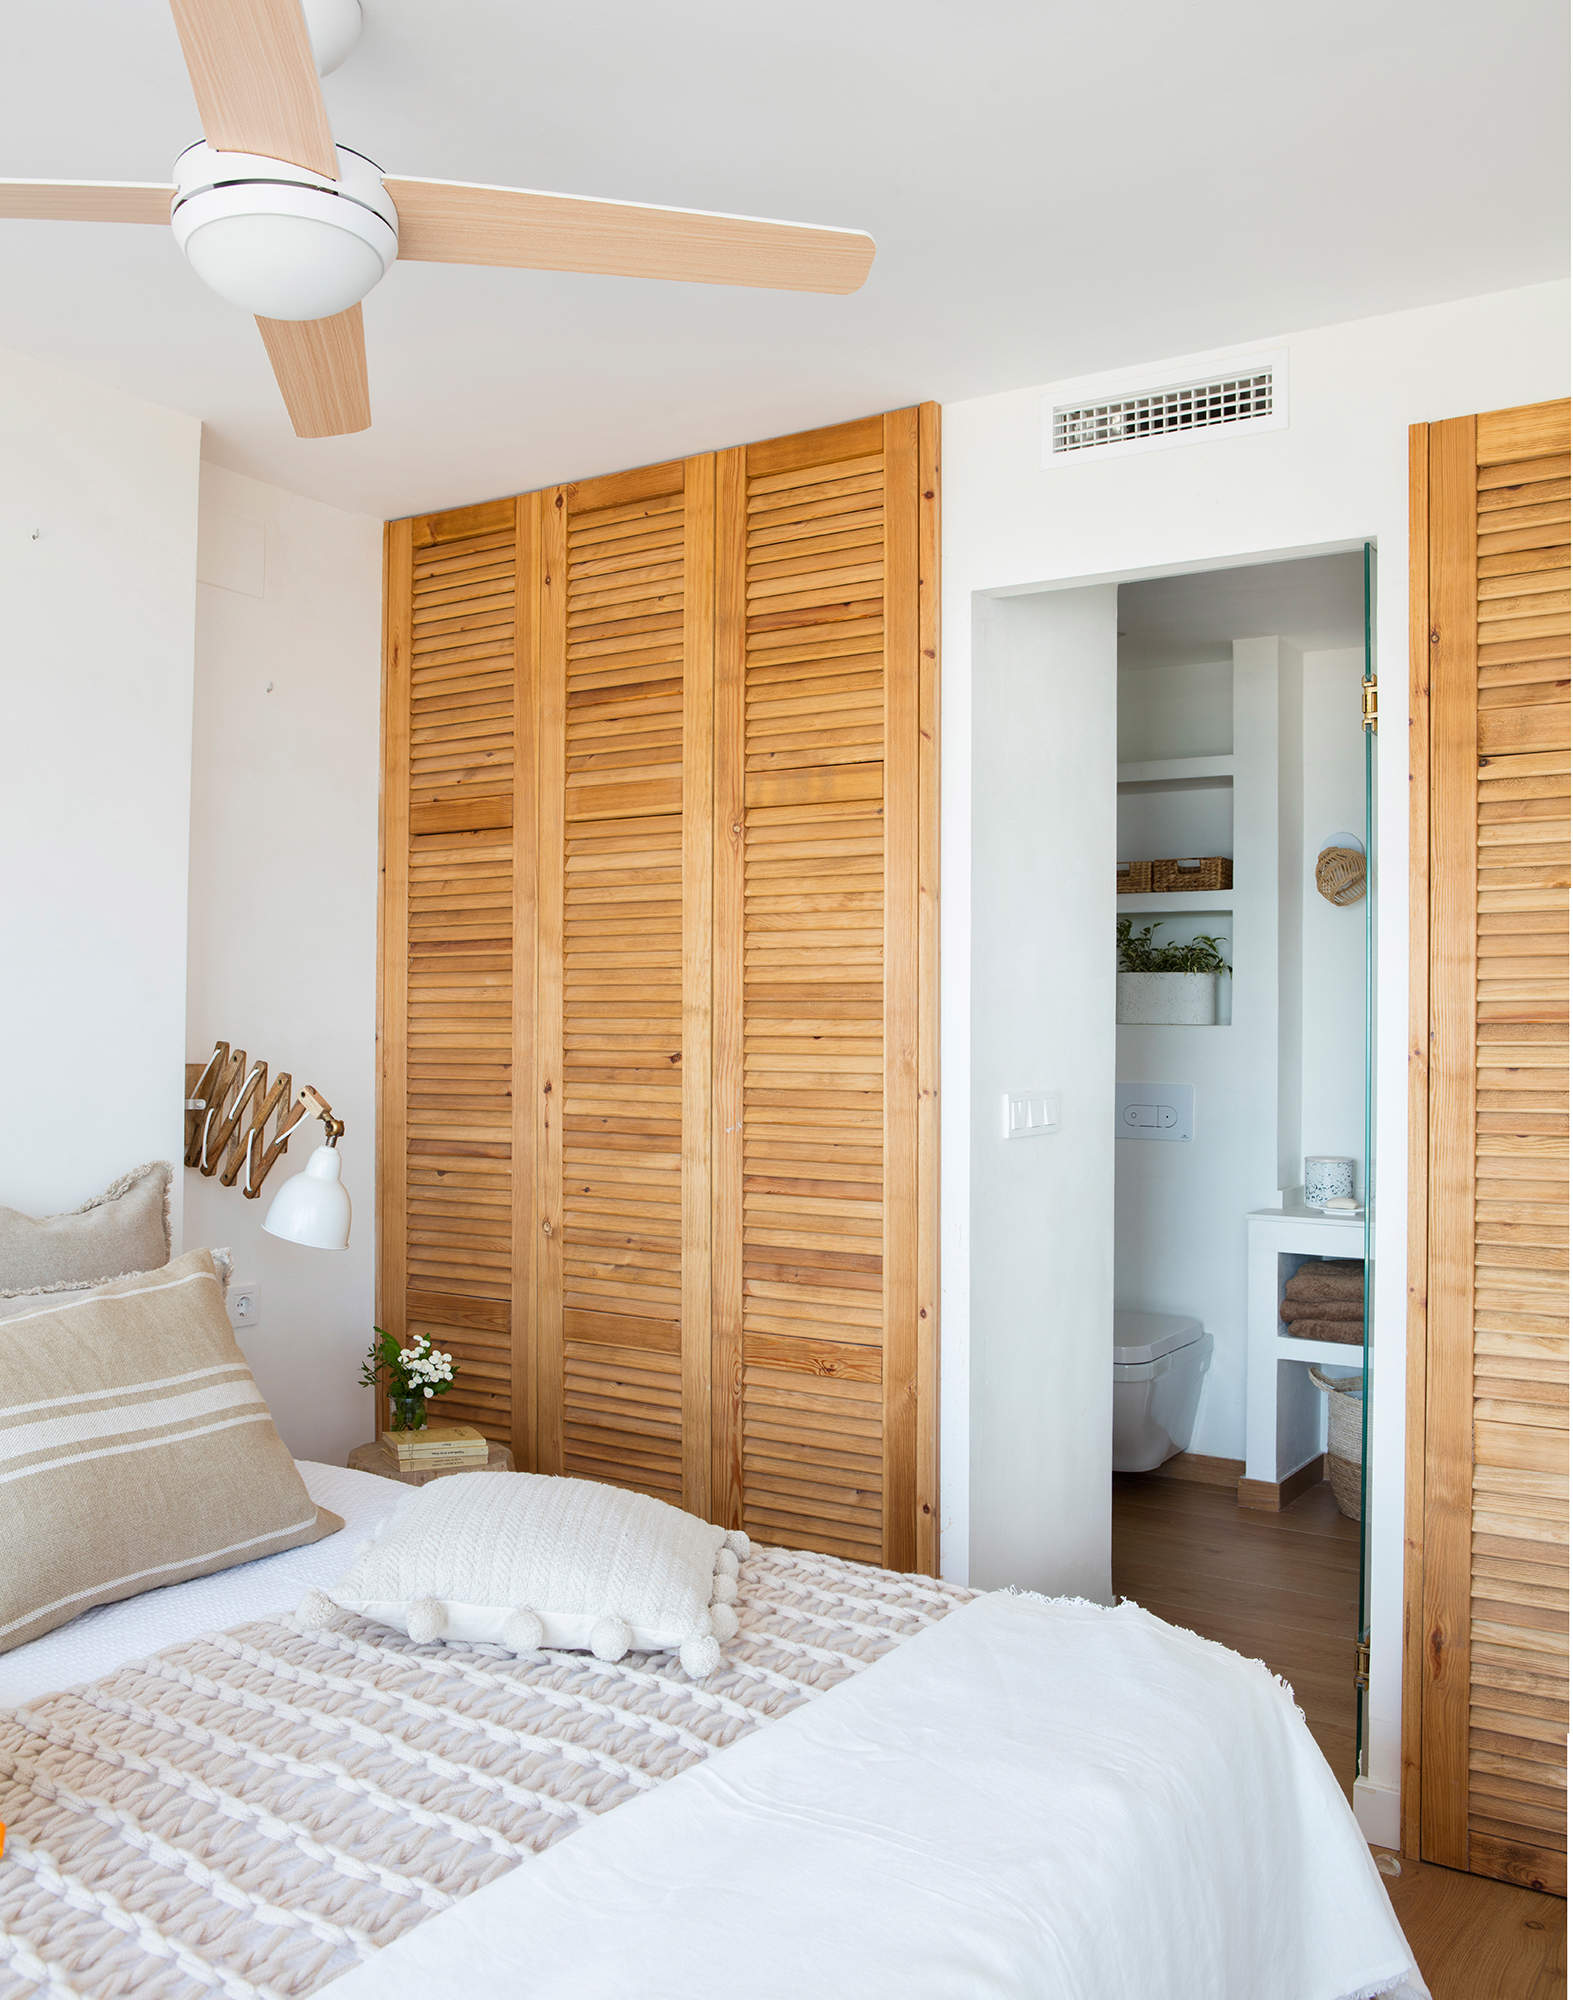 Dormitorio armarios puertas madera 